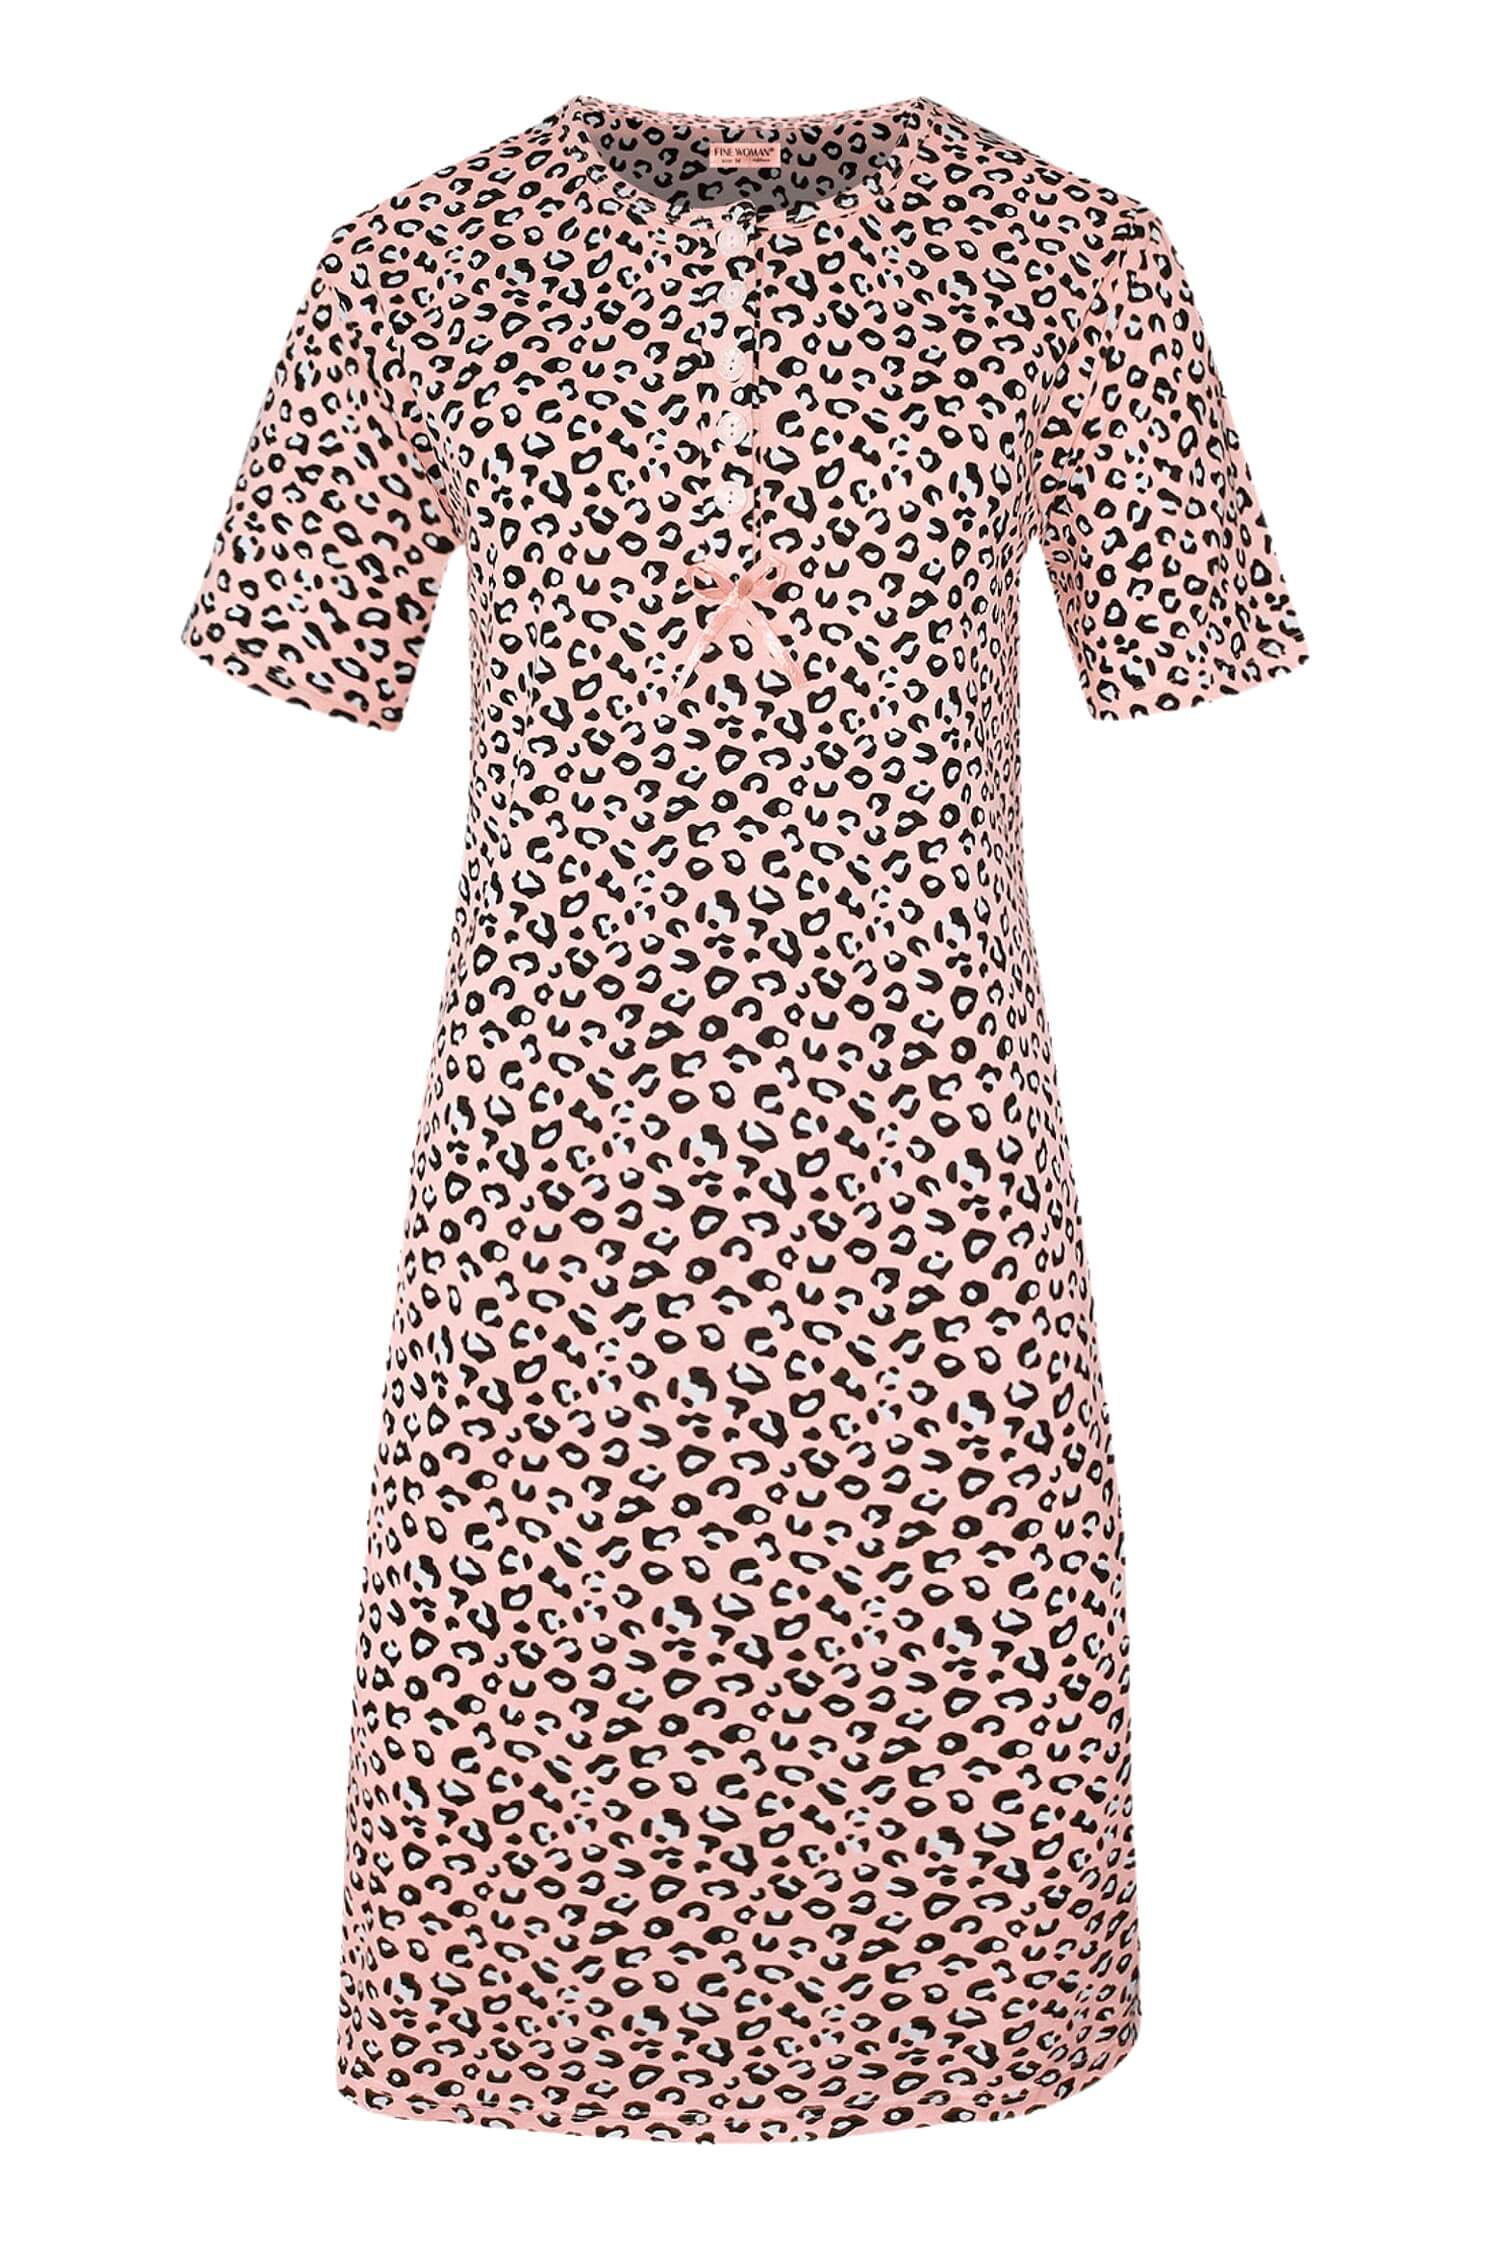 Katarina dámská noční košile leopardí vzor 6529 4XL světle růžová